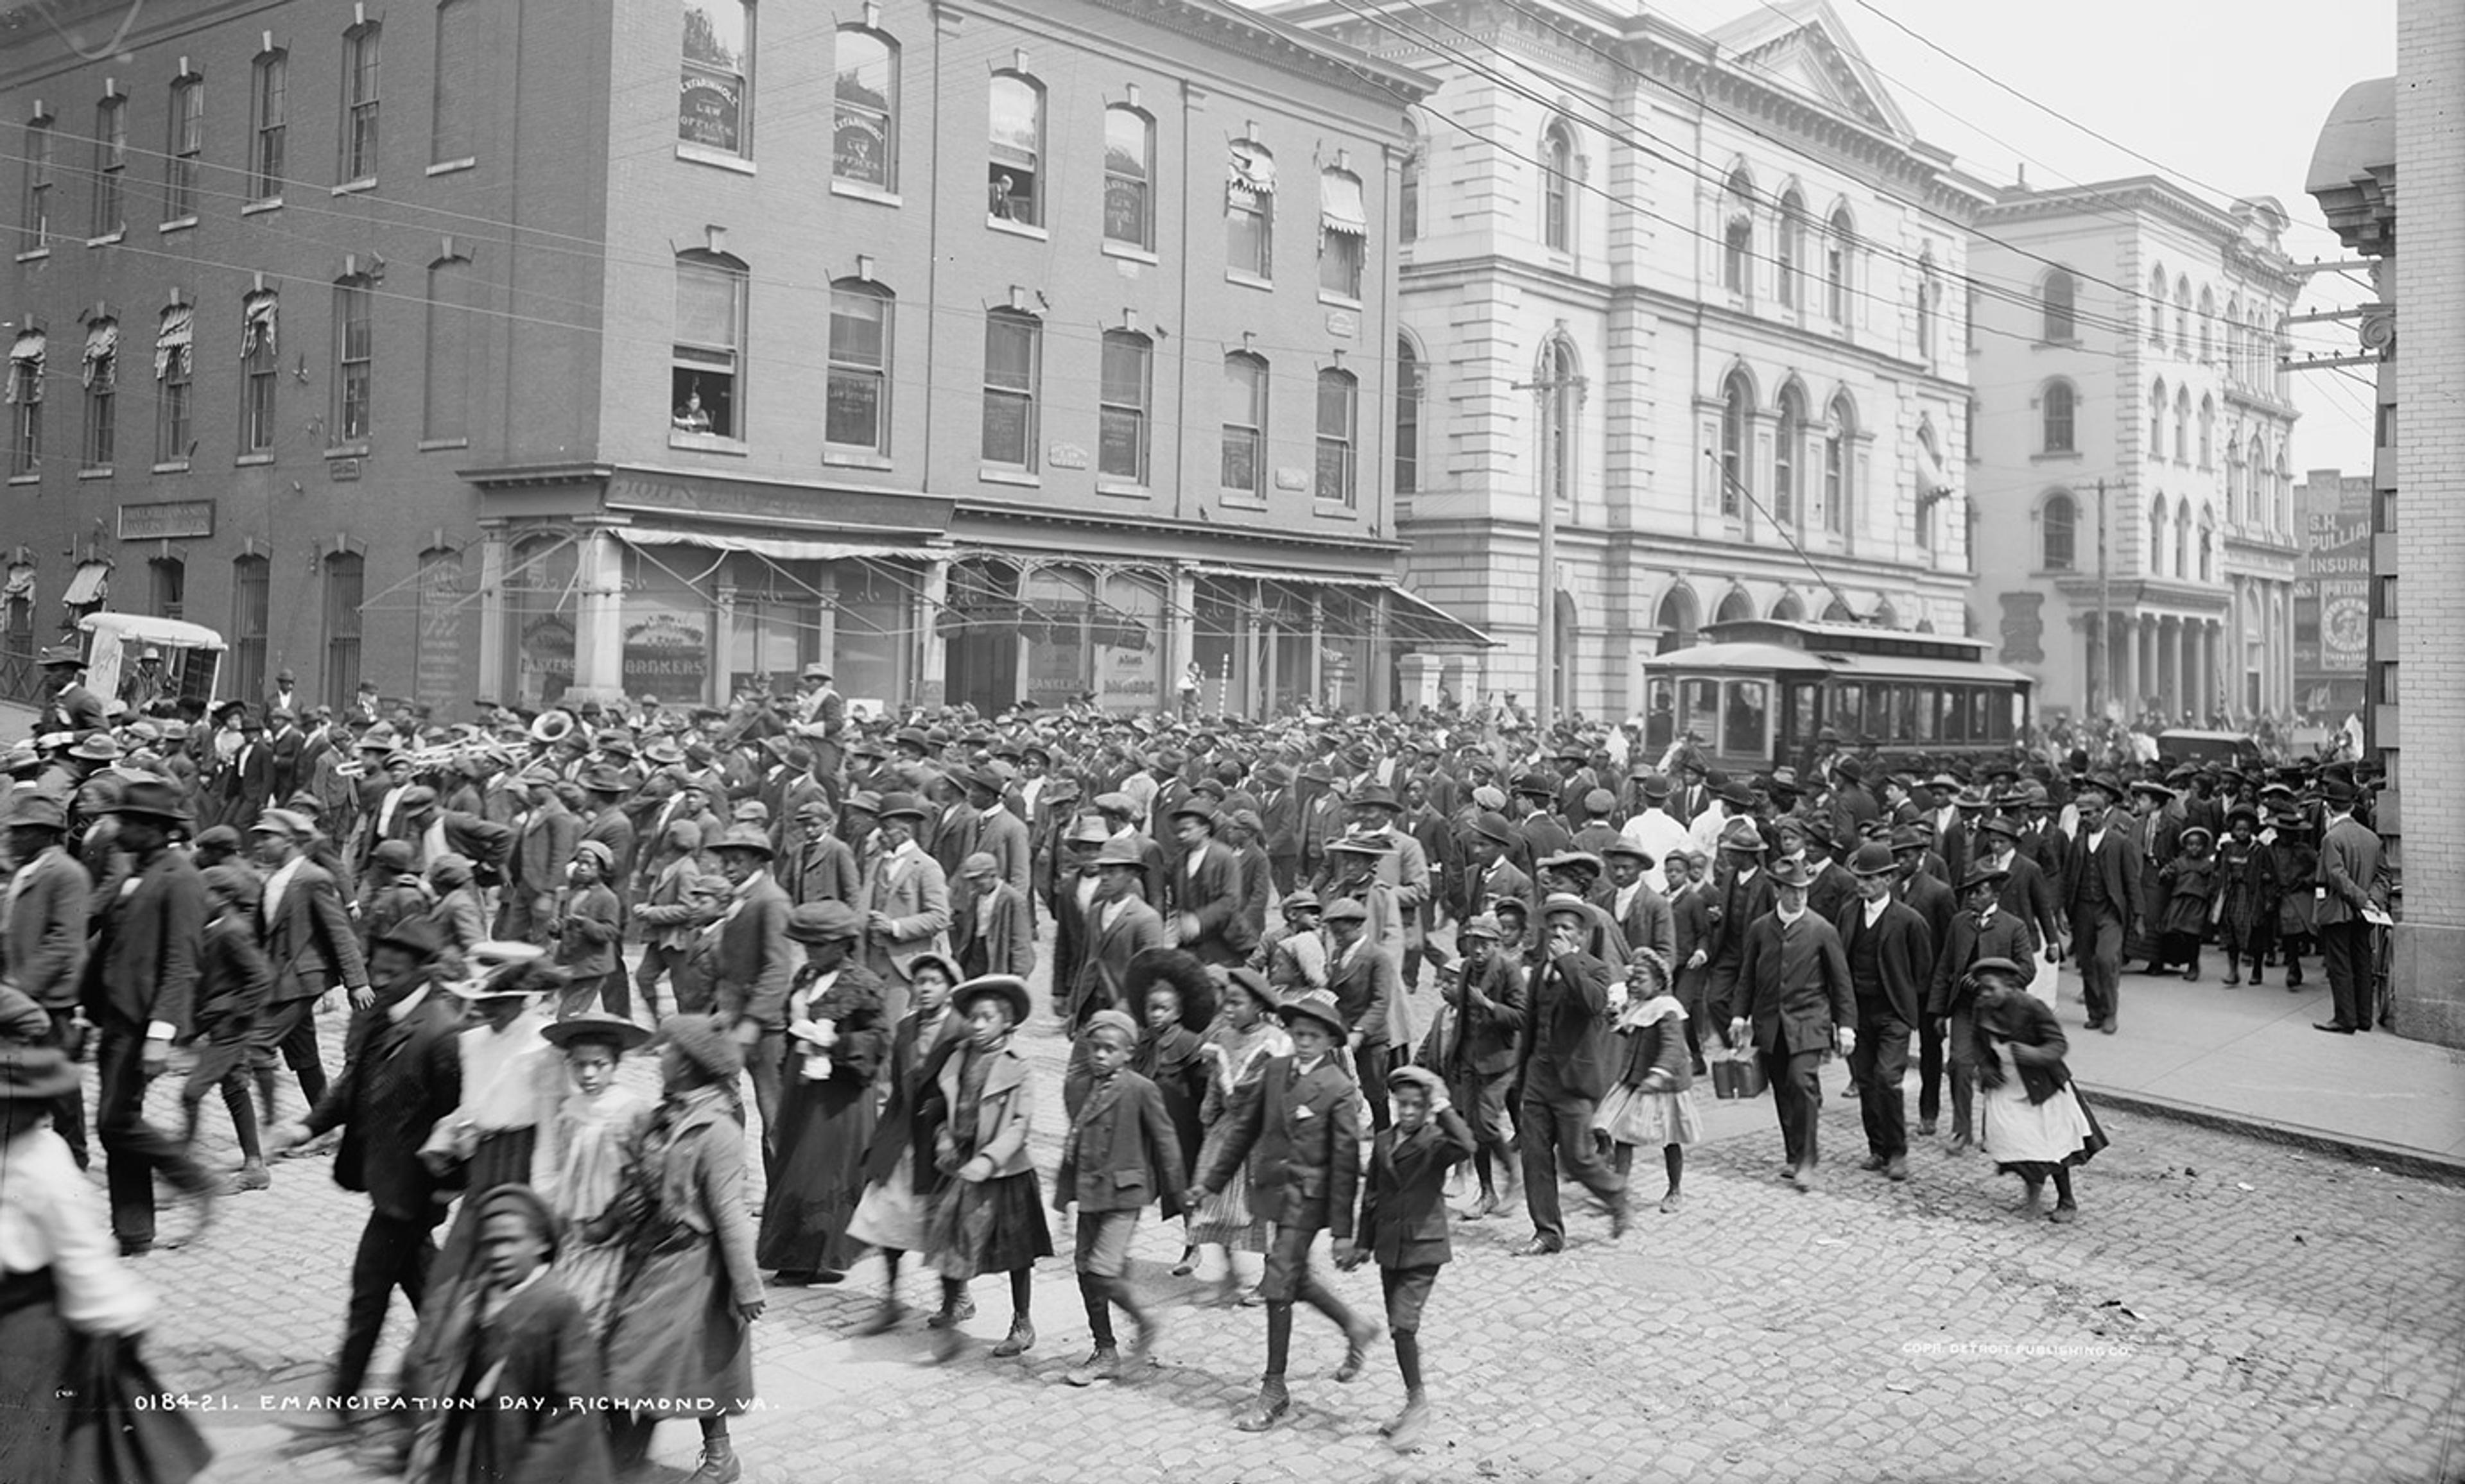 <p>An Emancipation Day parade, Richmond VA. c1905. <em>Library of Congress</em></p>